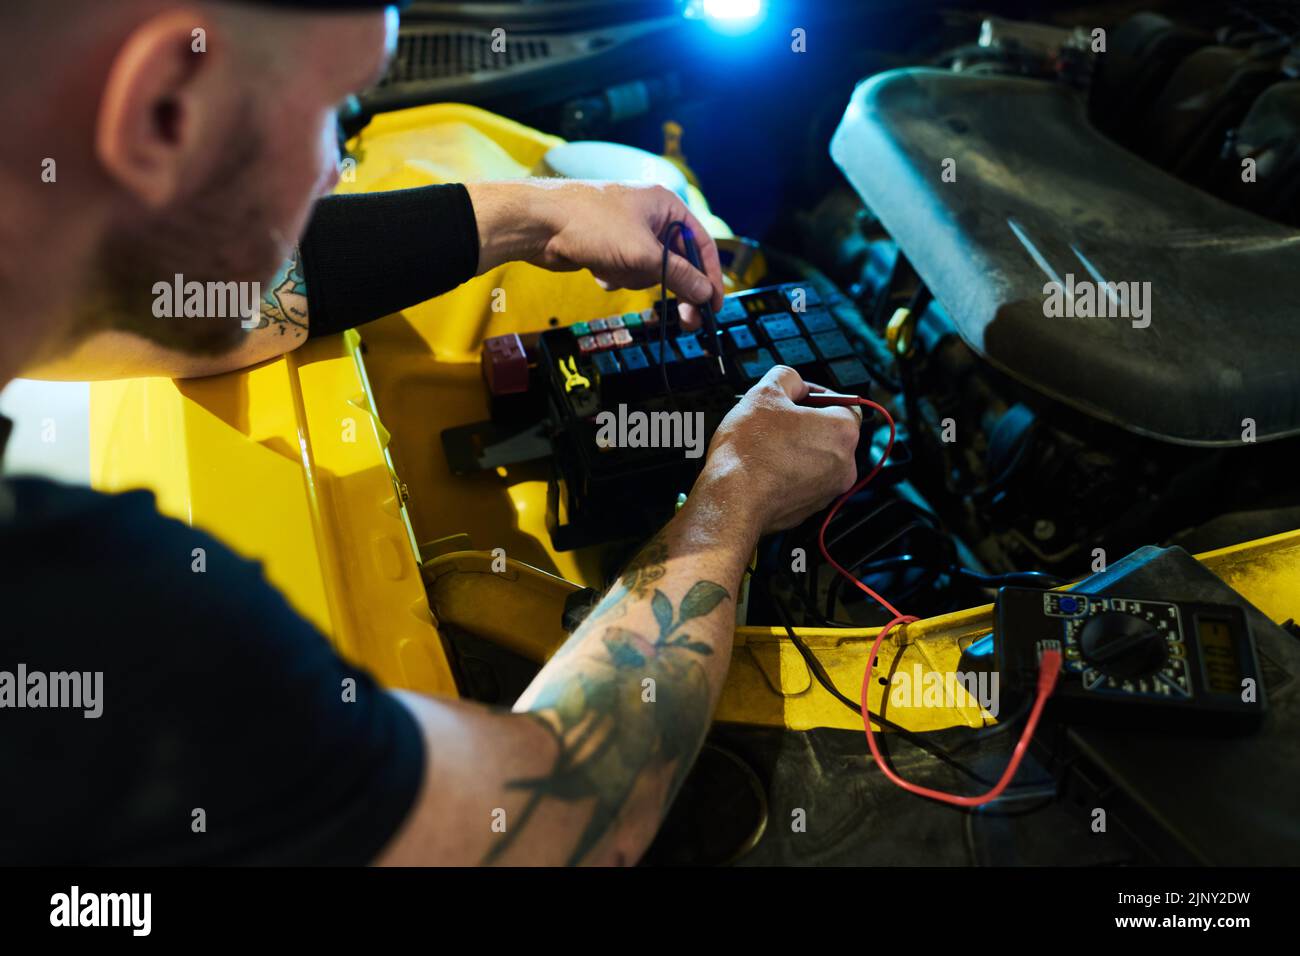 Mecánico de servicio de mantenimiento realizando diagnósticos técnicos de motor de coche y otras piezas con ayuda de multímetro digital Foto de stock